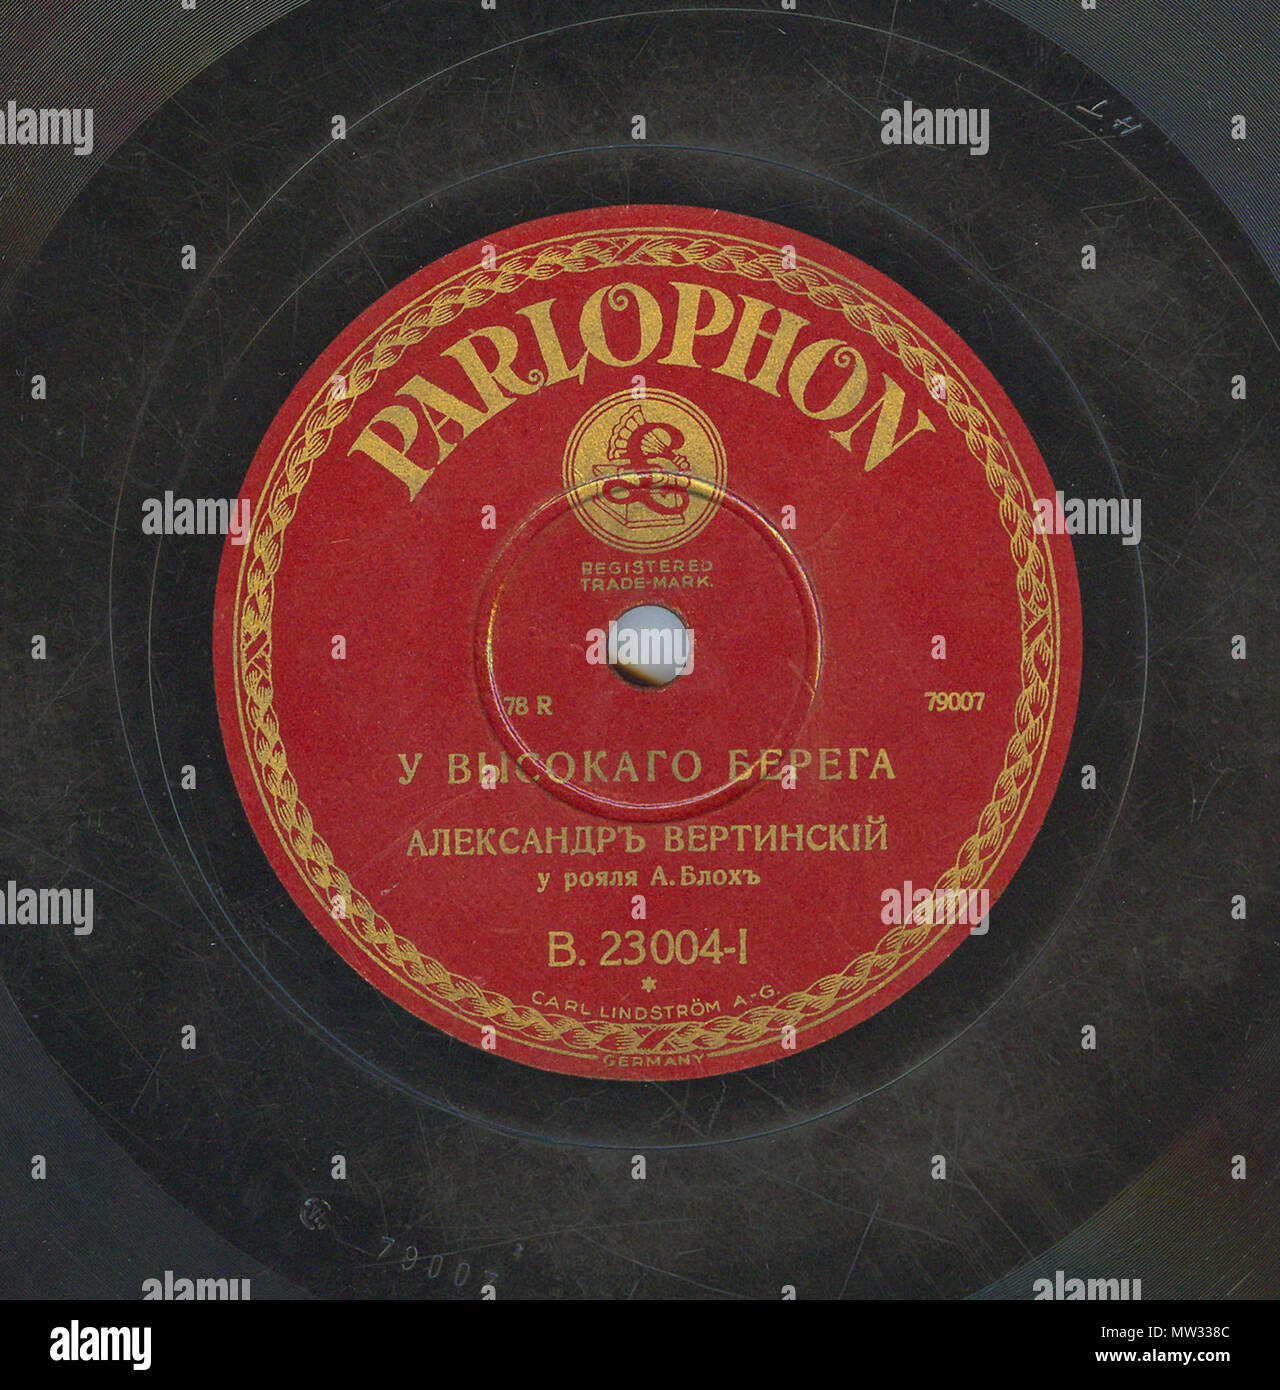 . Englisch: Vertinsky Parlophone B. 23004 01. 6. April 2010, 12:06:37. Parlophone 629 Vertinsky Parlophone B. 23004, 01. Stockfoto